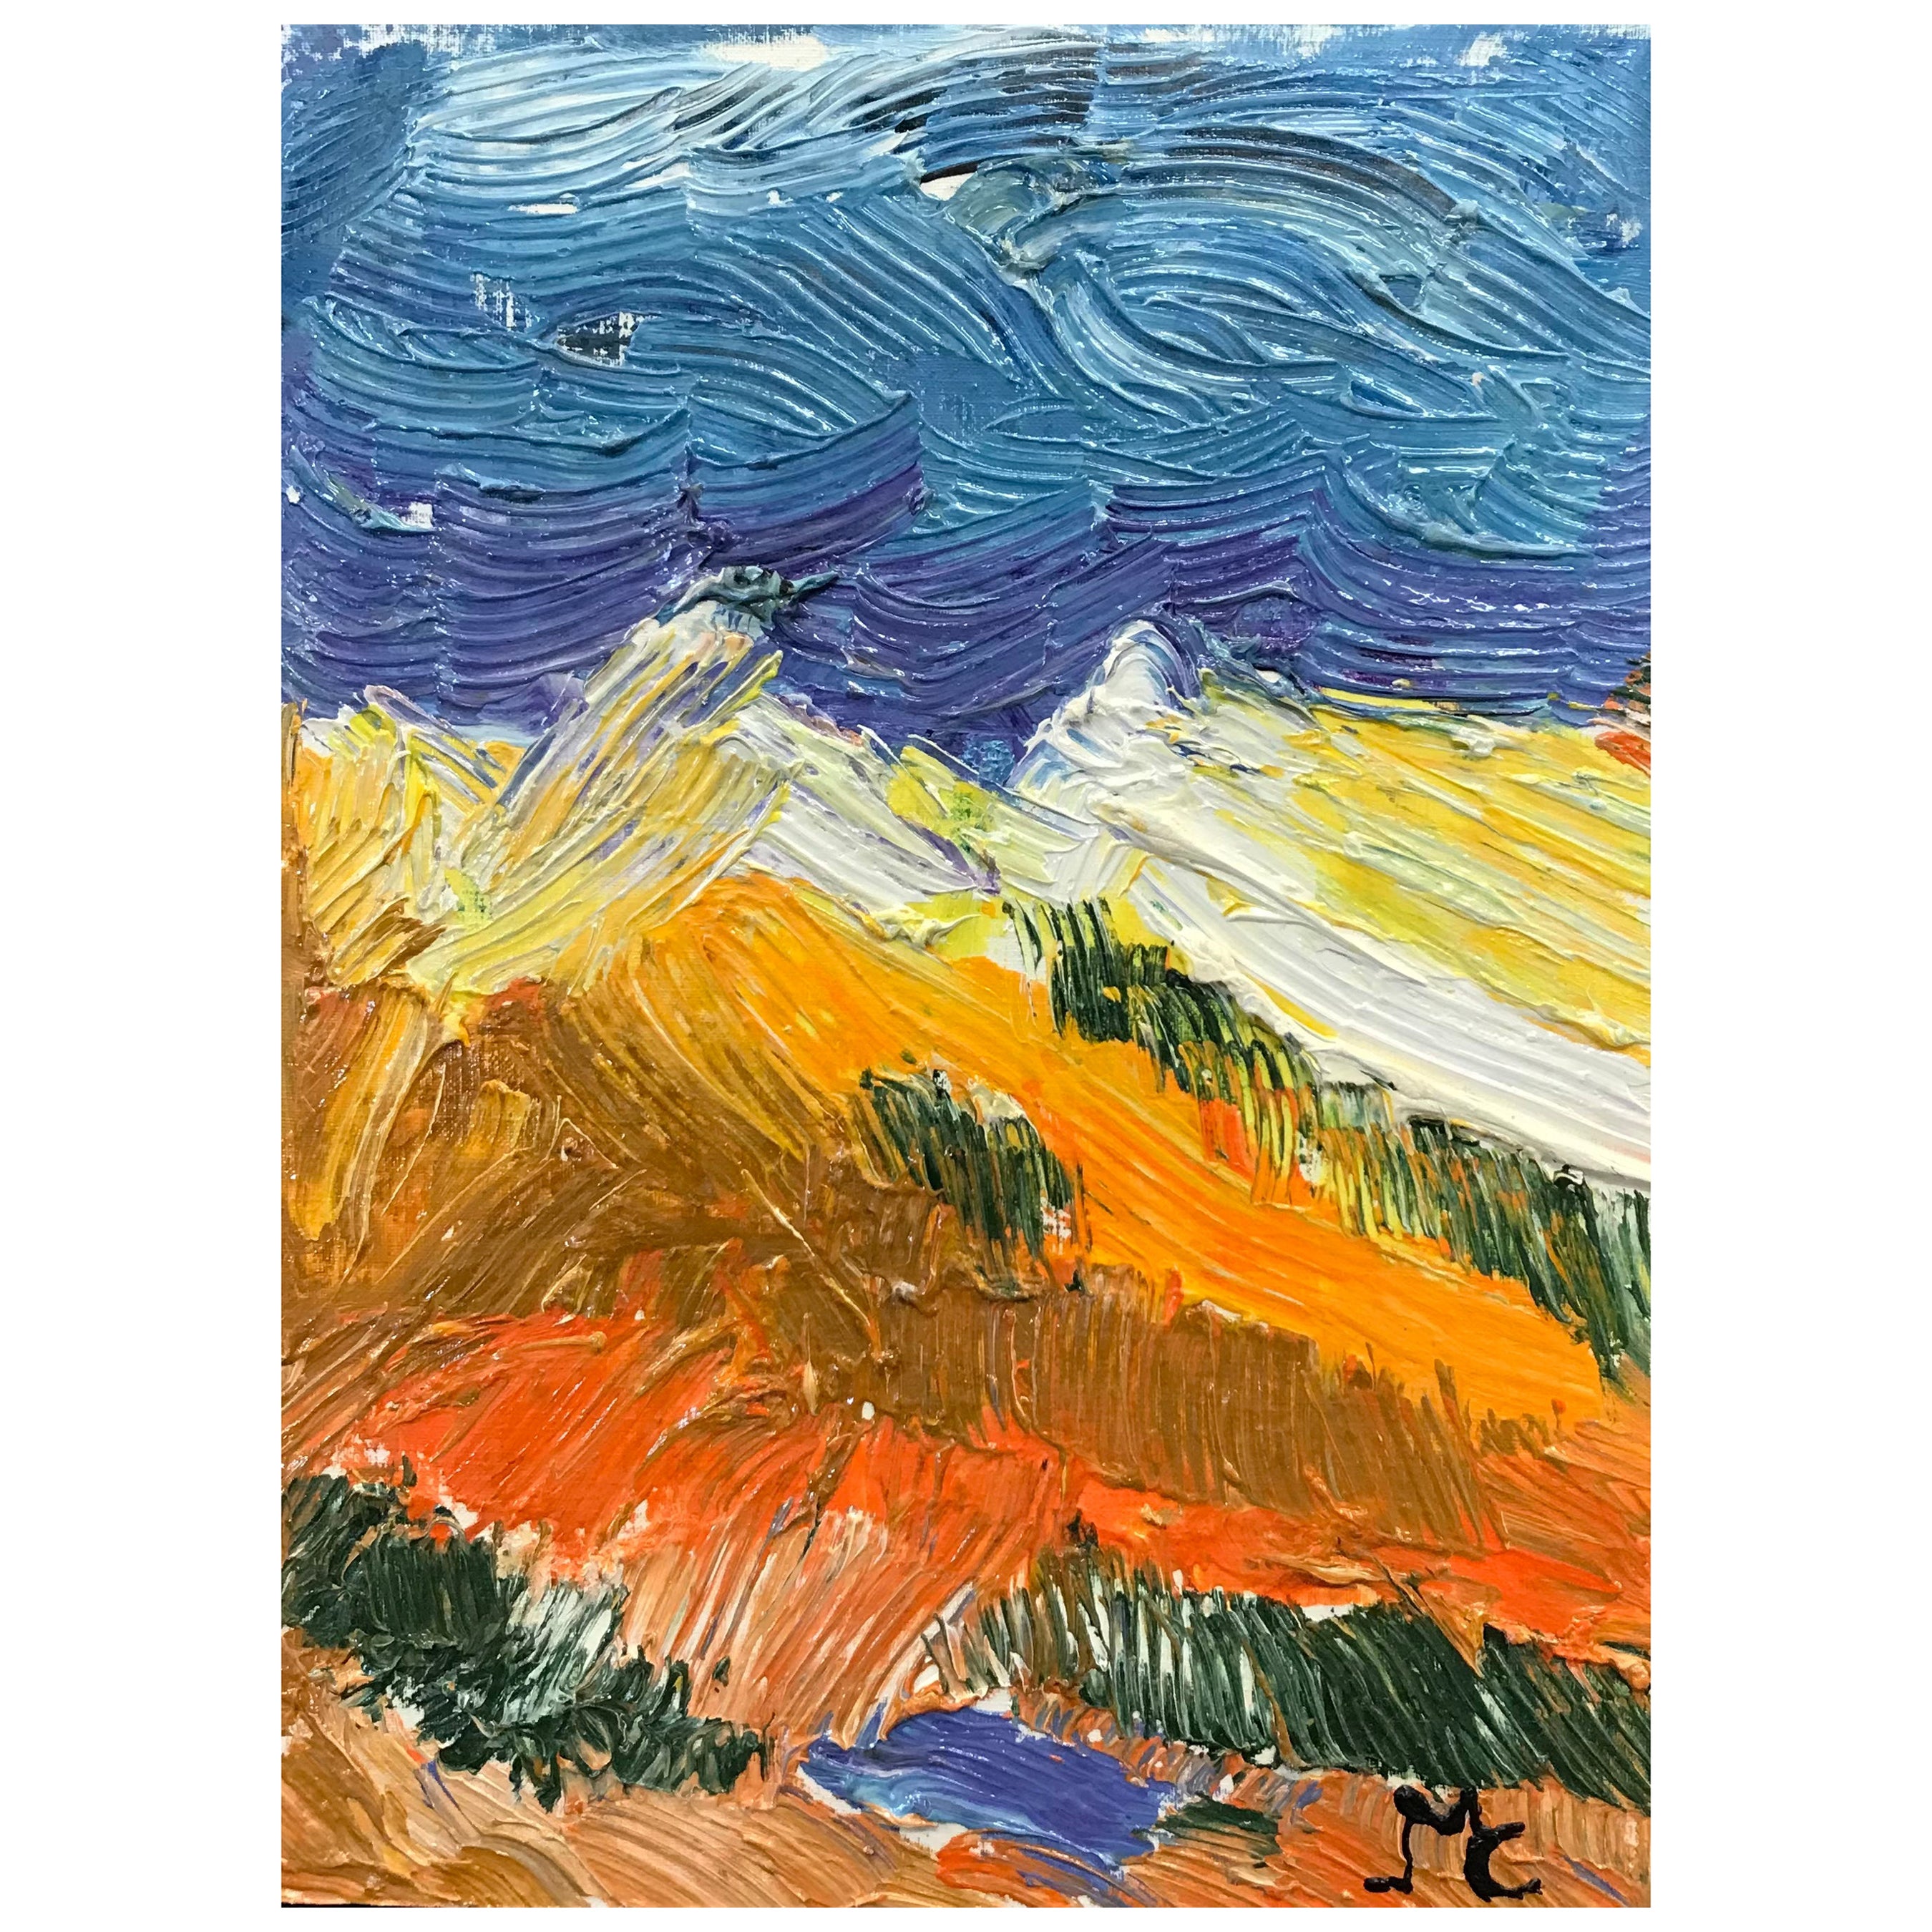 Peinture à l'huile impressionniste française lumineuse et colorée, paysage vibrant